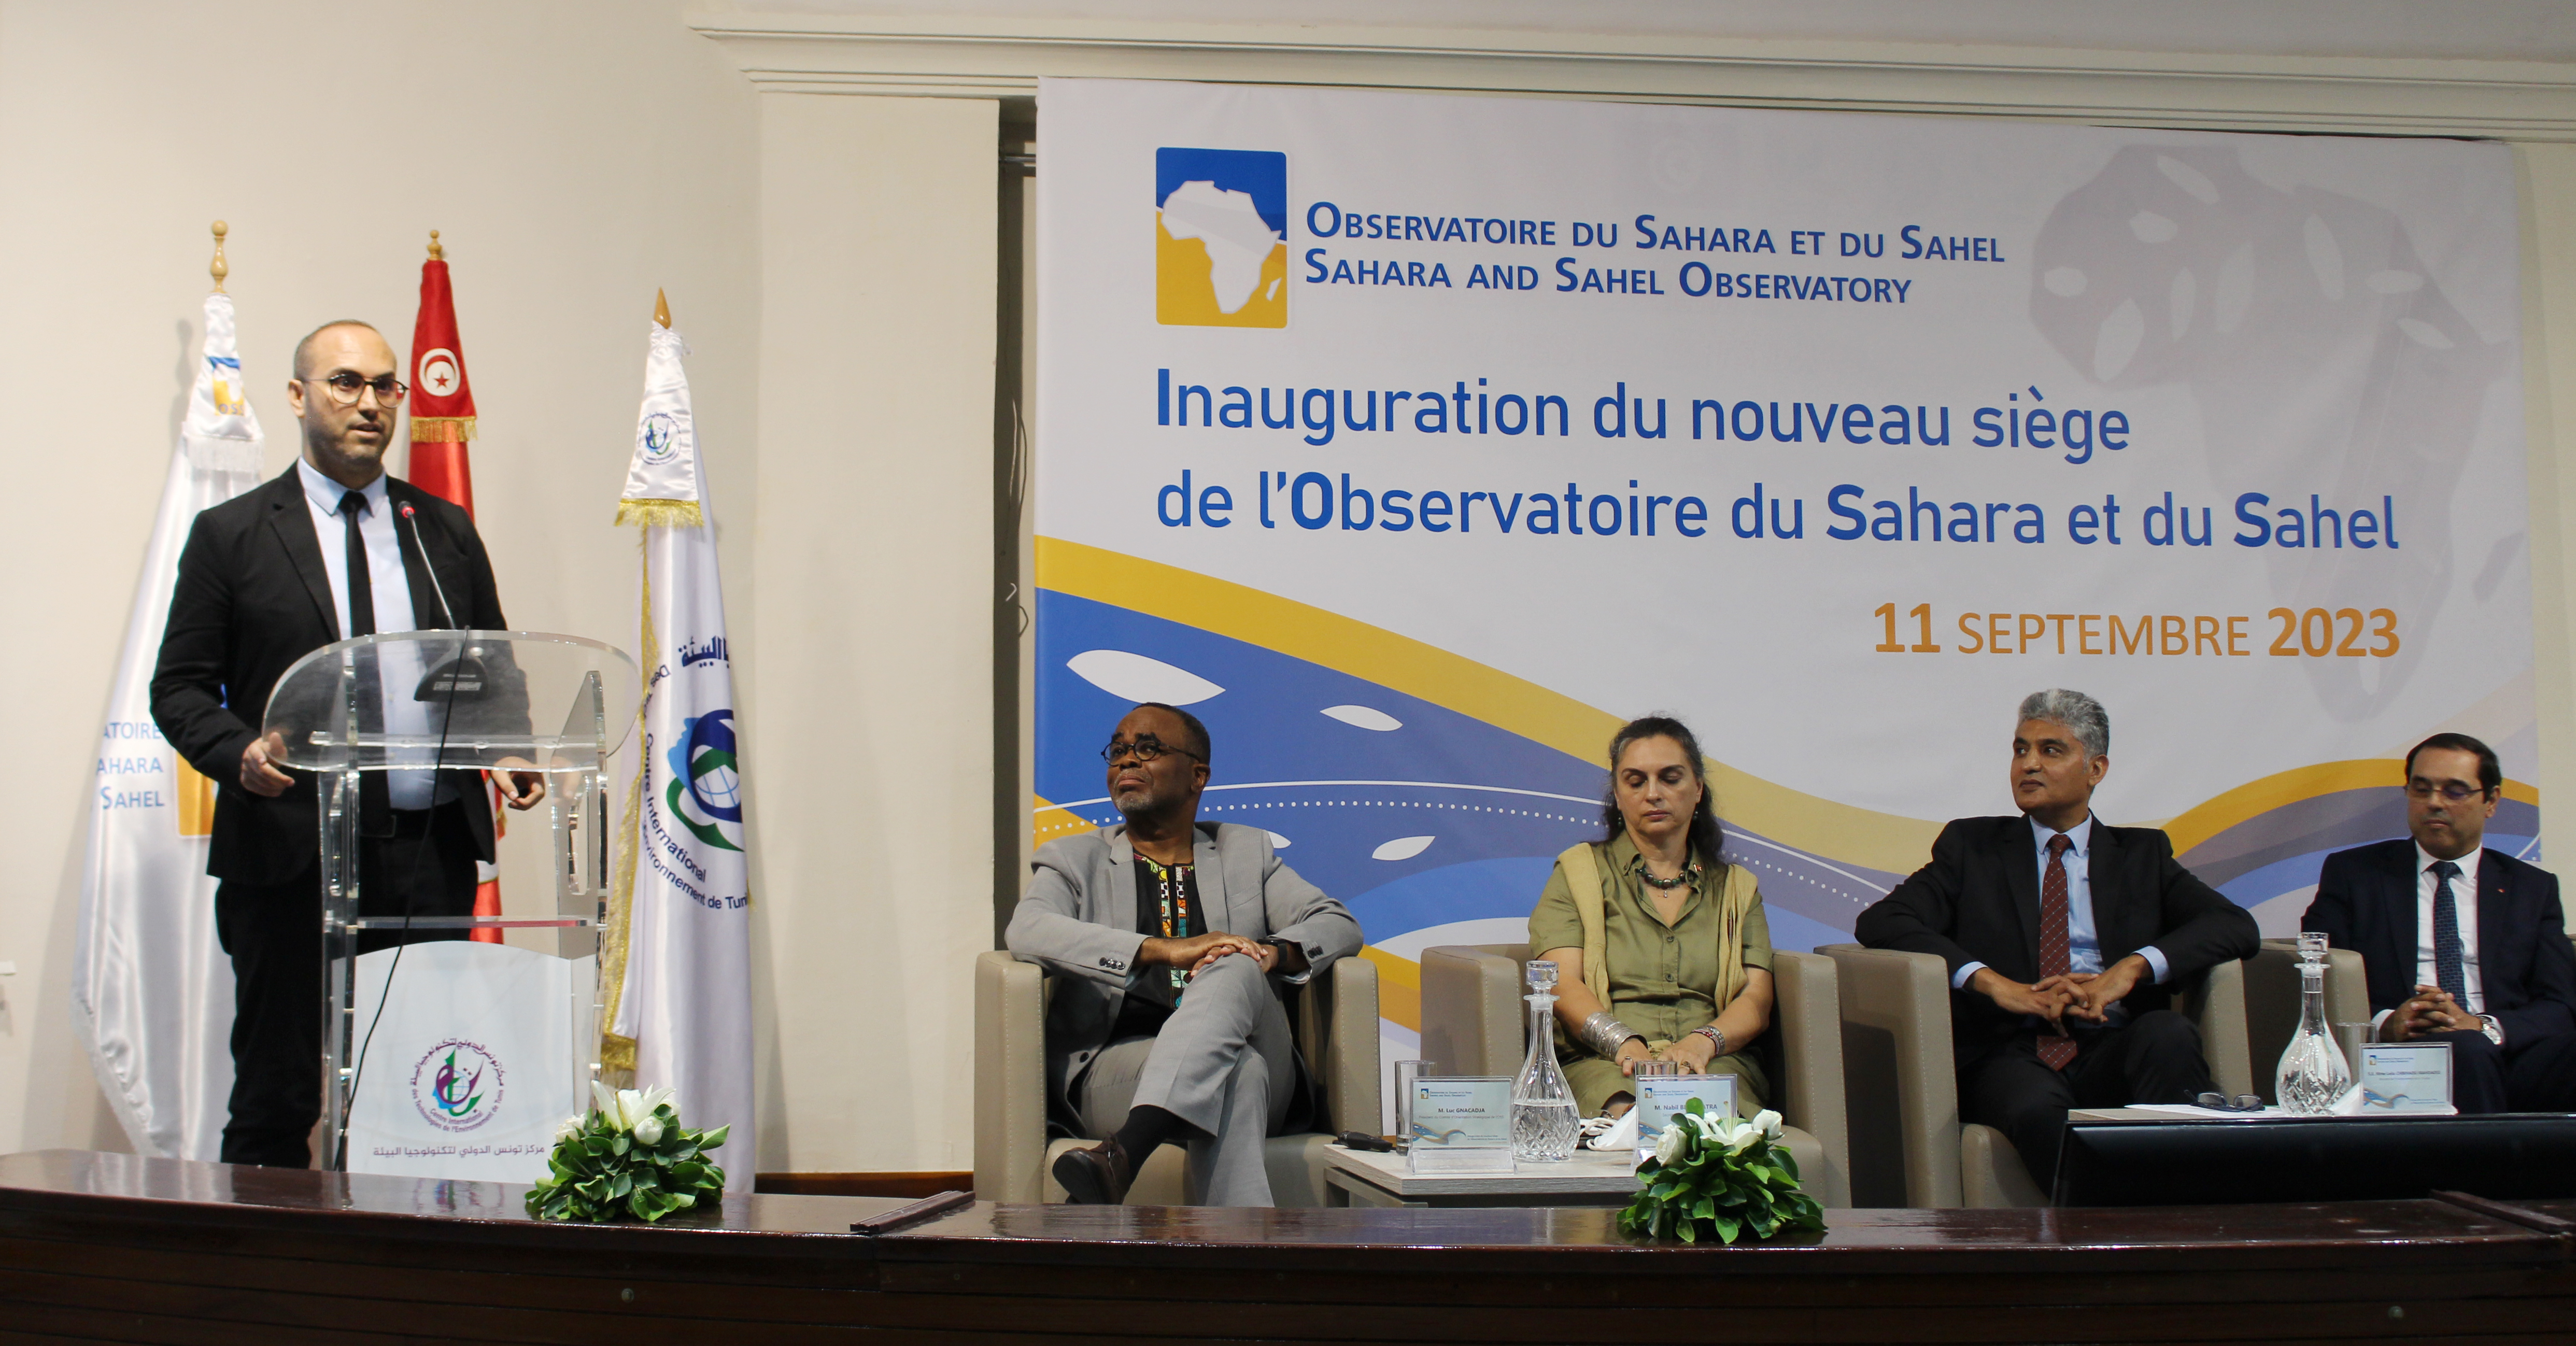 Inauguration du Nouveau Siège de l'Observatoire du Sahara et du Sahel, 11 septembre 2023